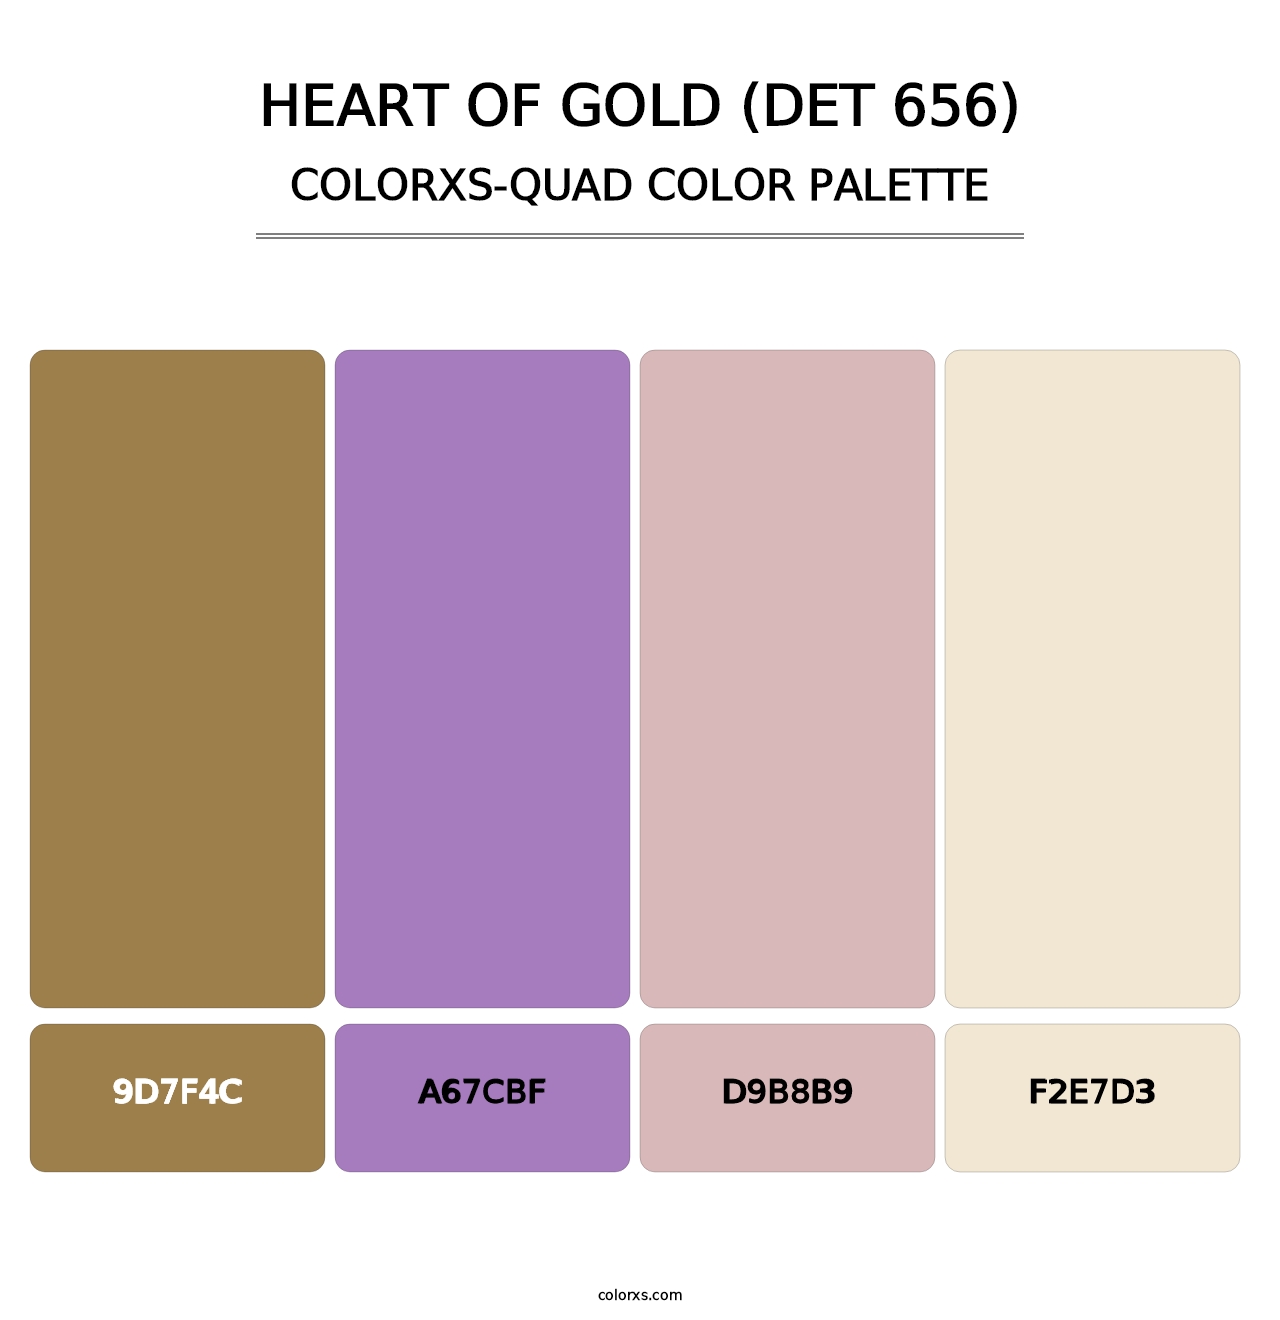 Heart of Gold (DET 656) - Colorxs Quad Palette